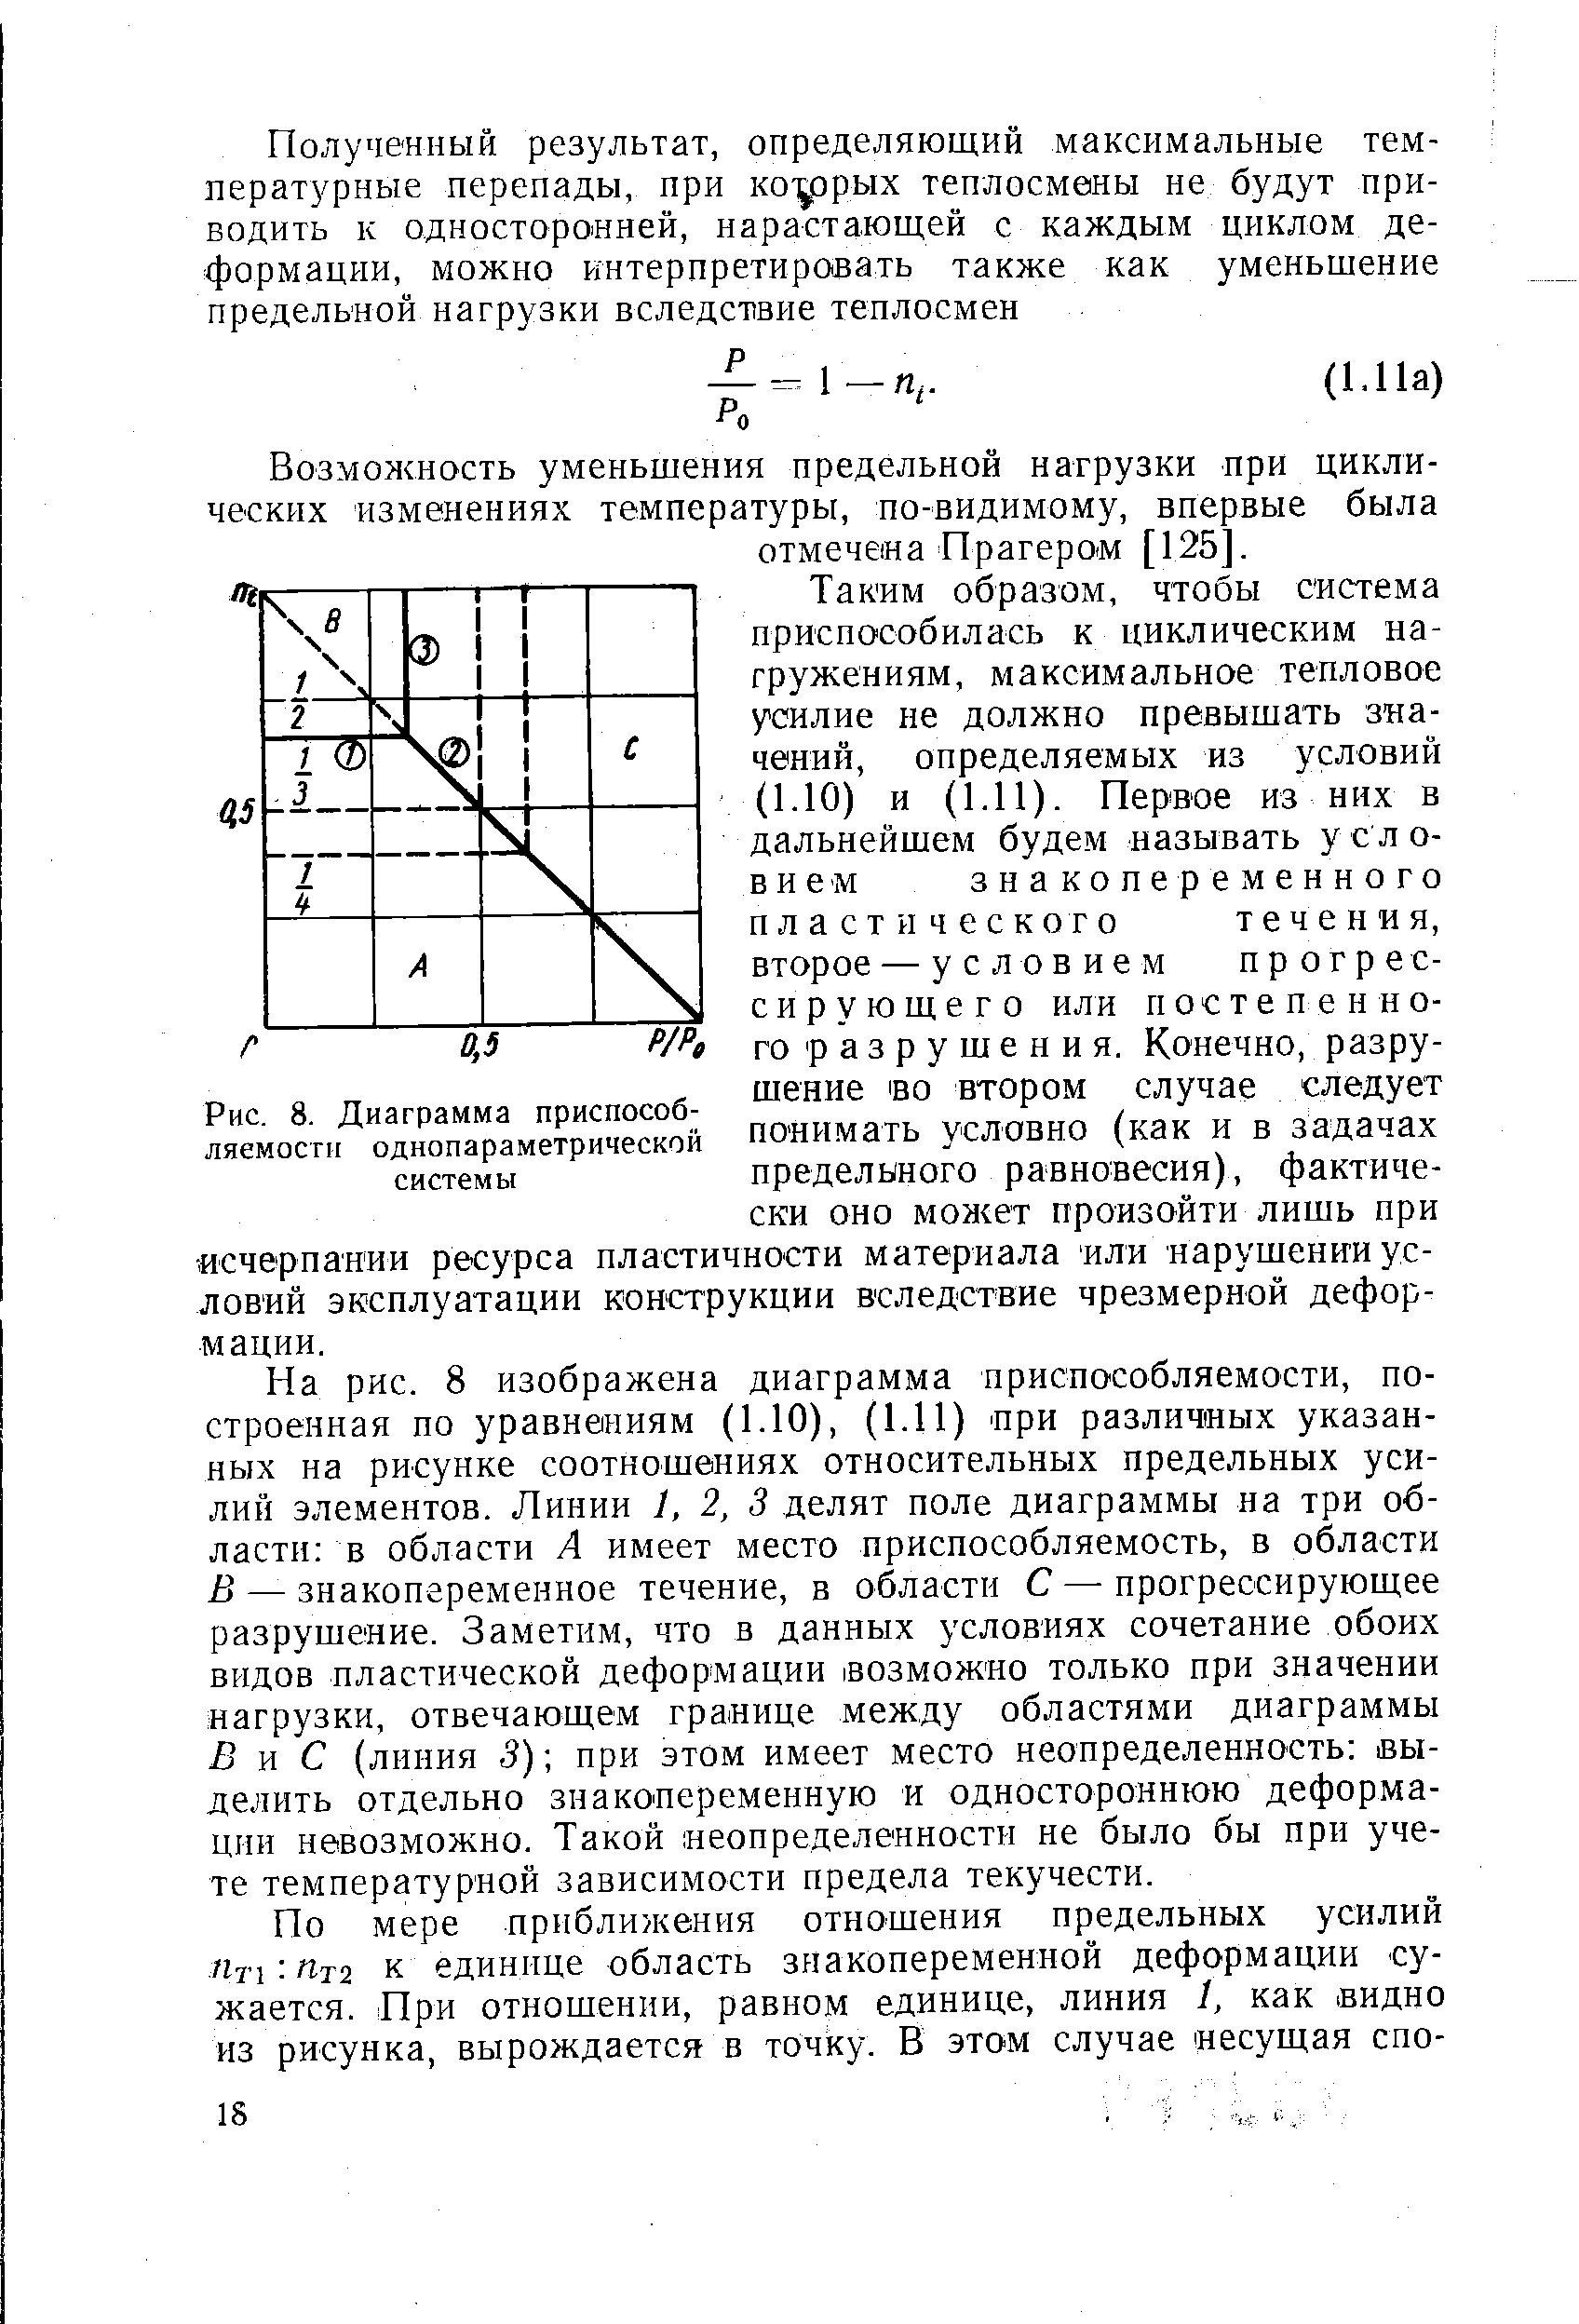 Рис. 8. Диаграмма приспособляемости однопараметрической системы
